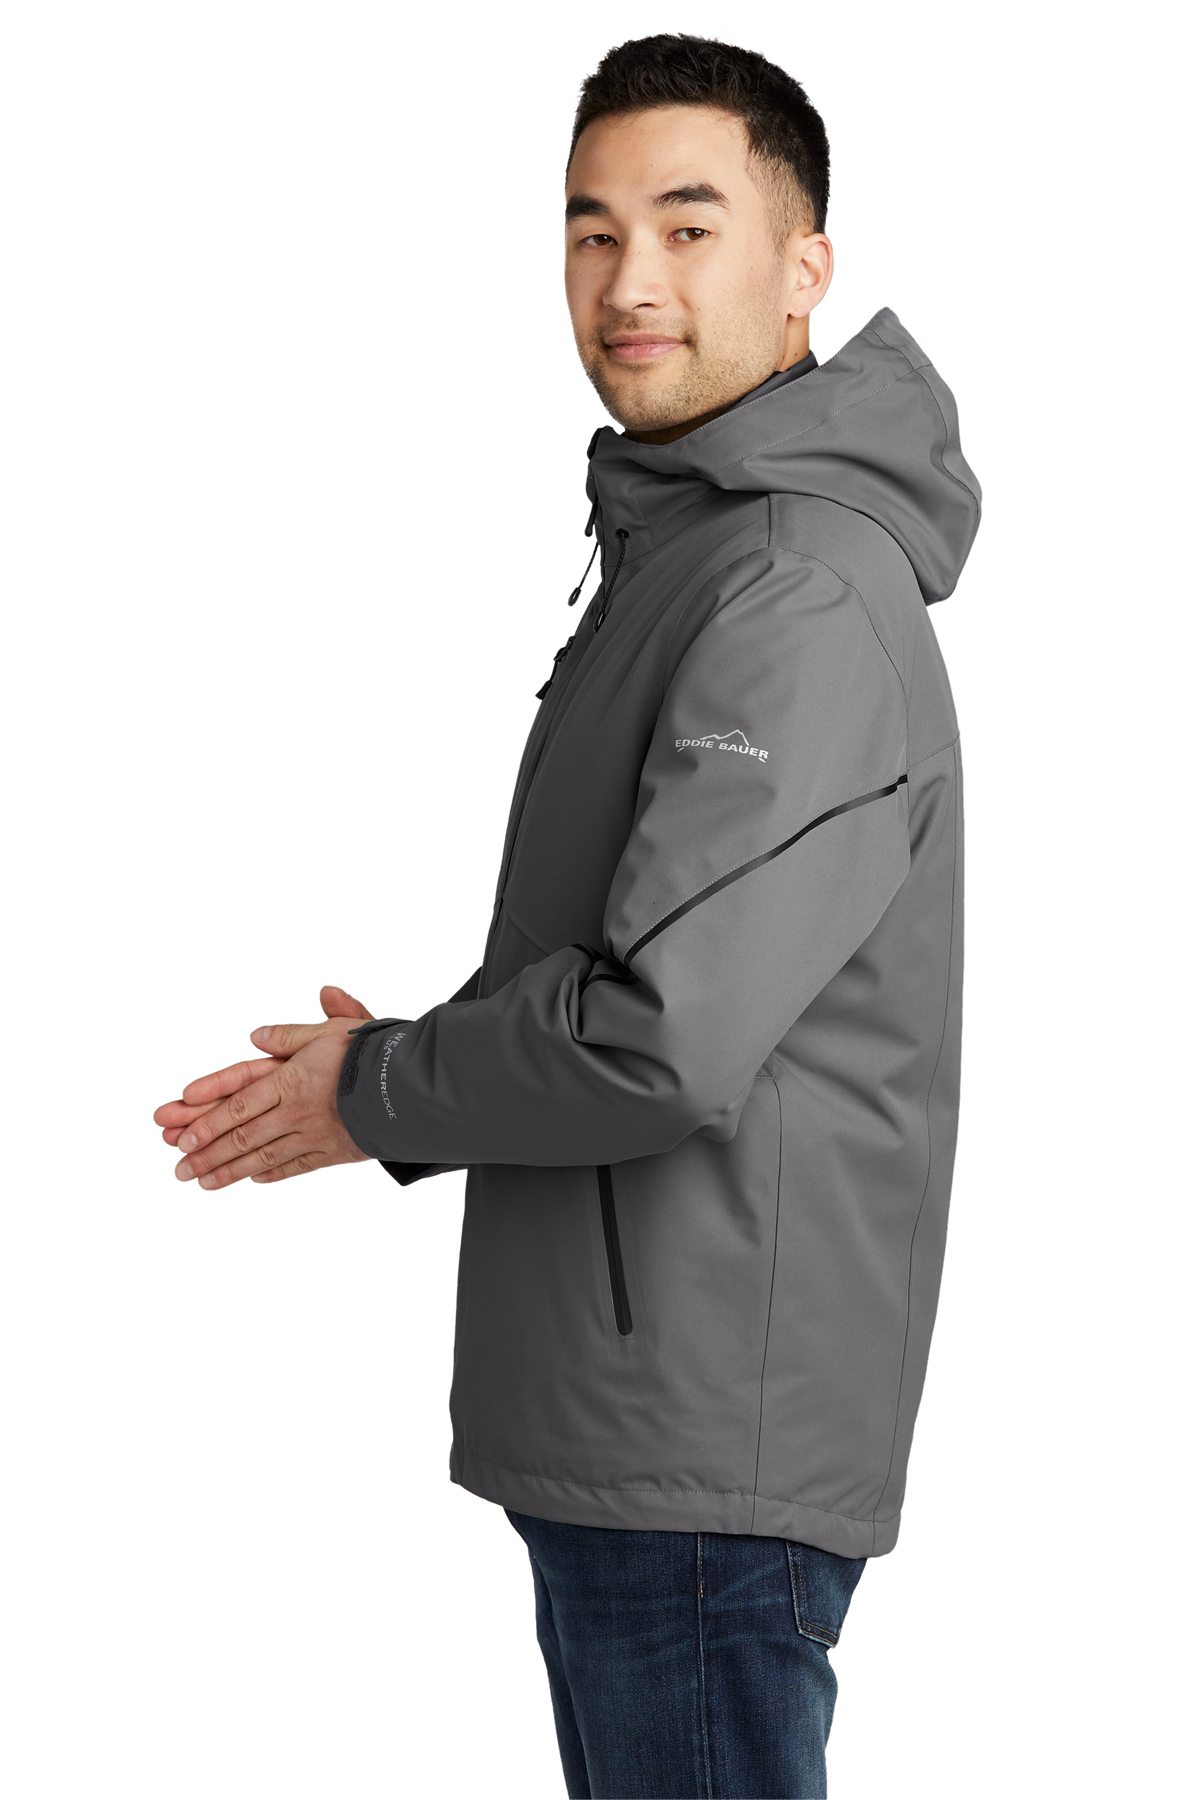 Eddie Bauer WeatherEdge Plus 3-in-1 Jacket | Product | SanMar